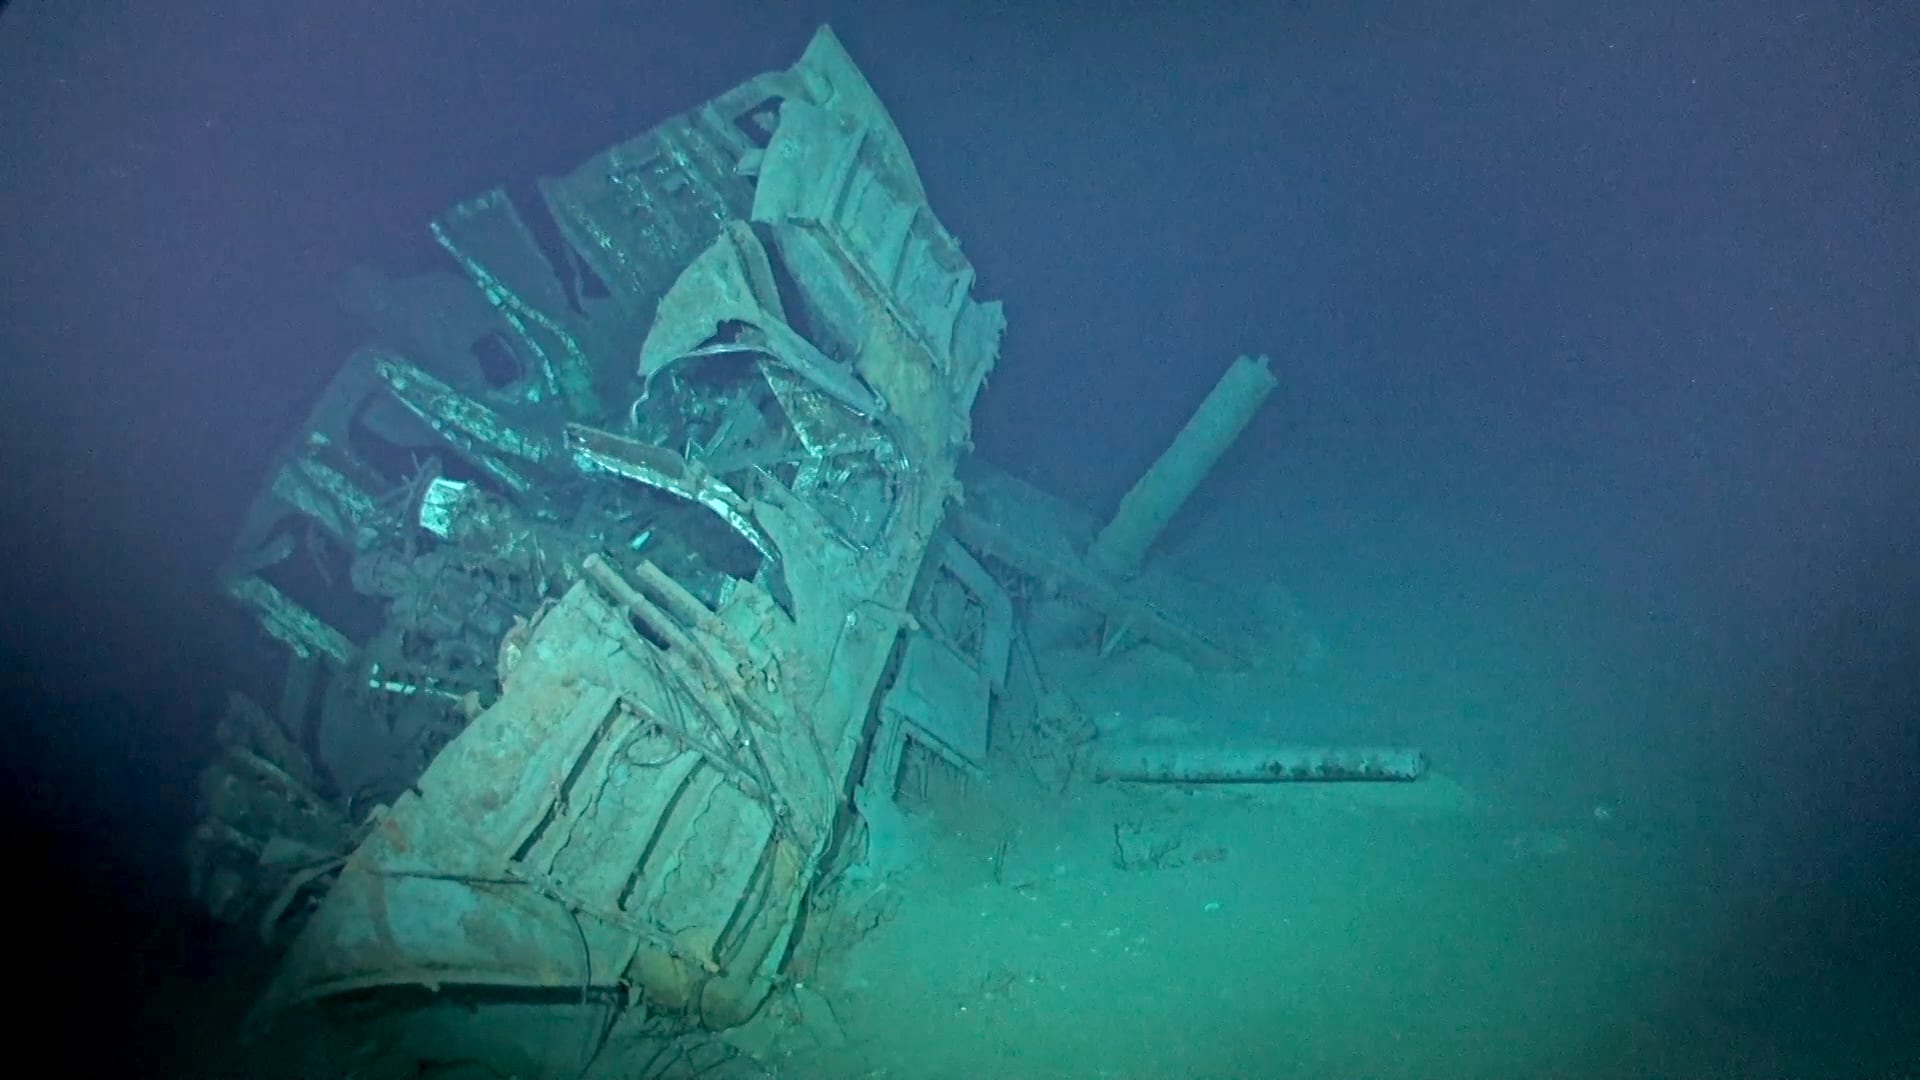 أول متحف تحت الماء في اليونان يتيح للسياح اكتشاف حطام سفينة عمره 2500 عام